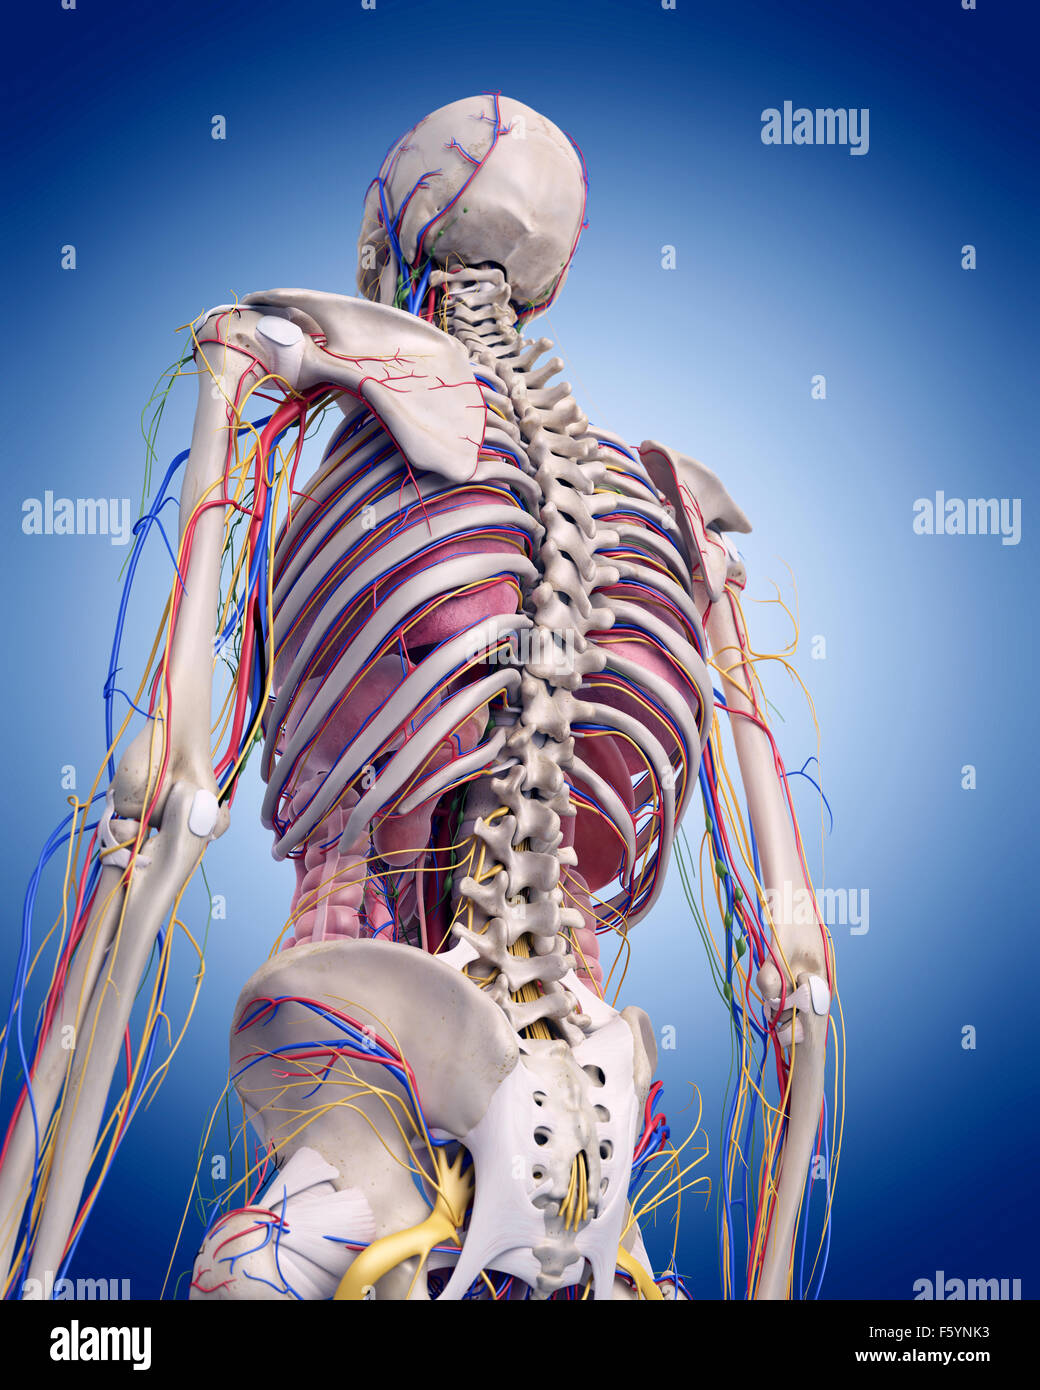 Dal punto di vista medico illustrazione accurata dell'anatomia umana Foto Stock